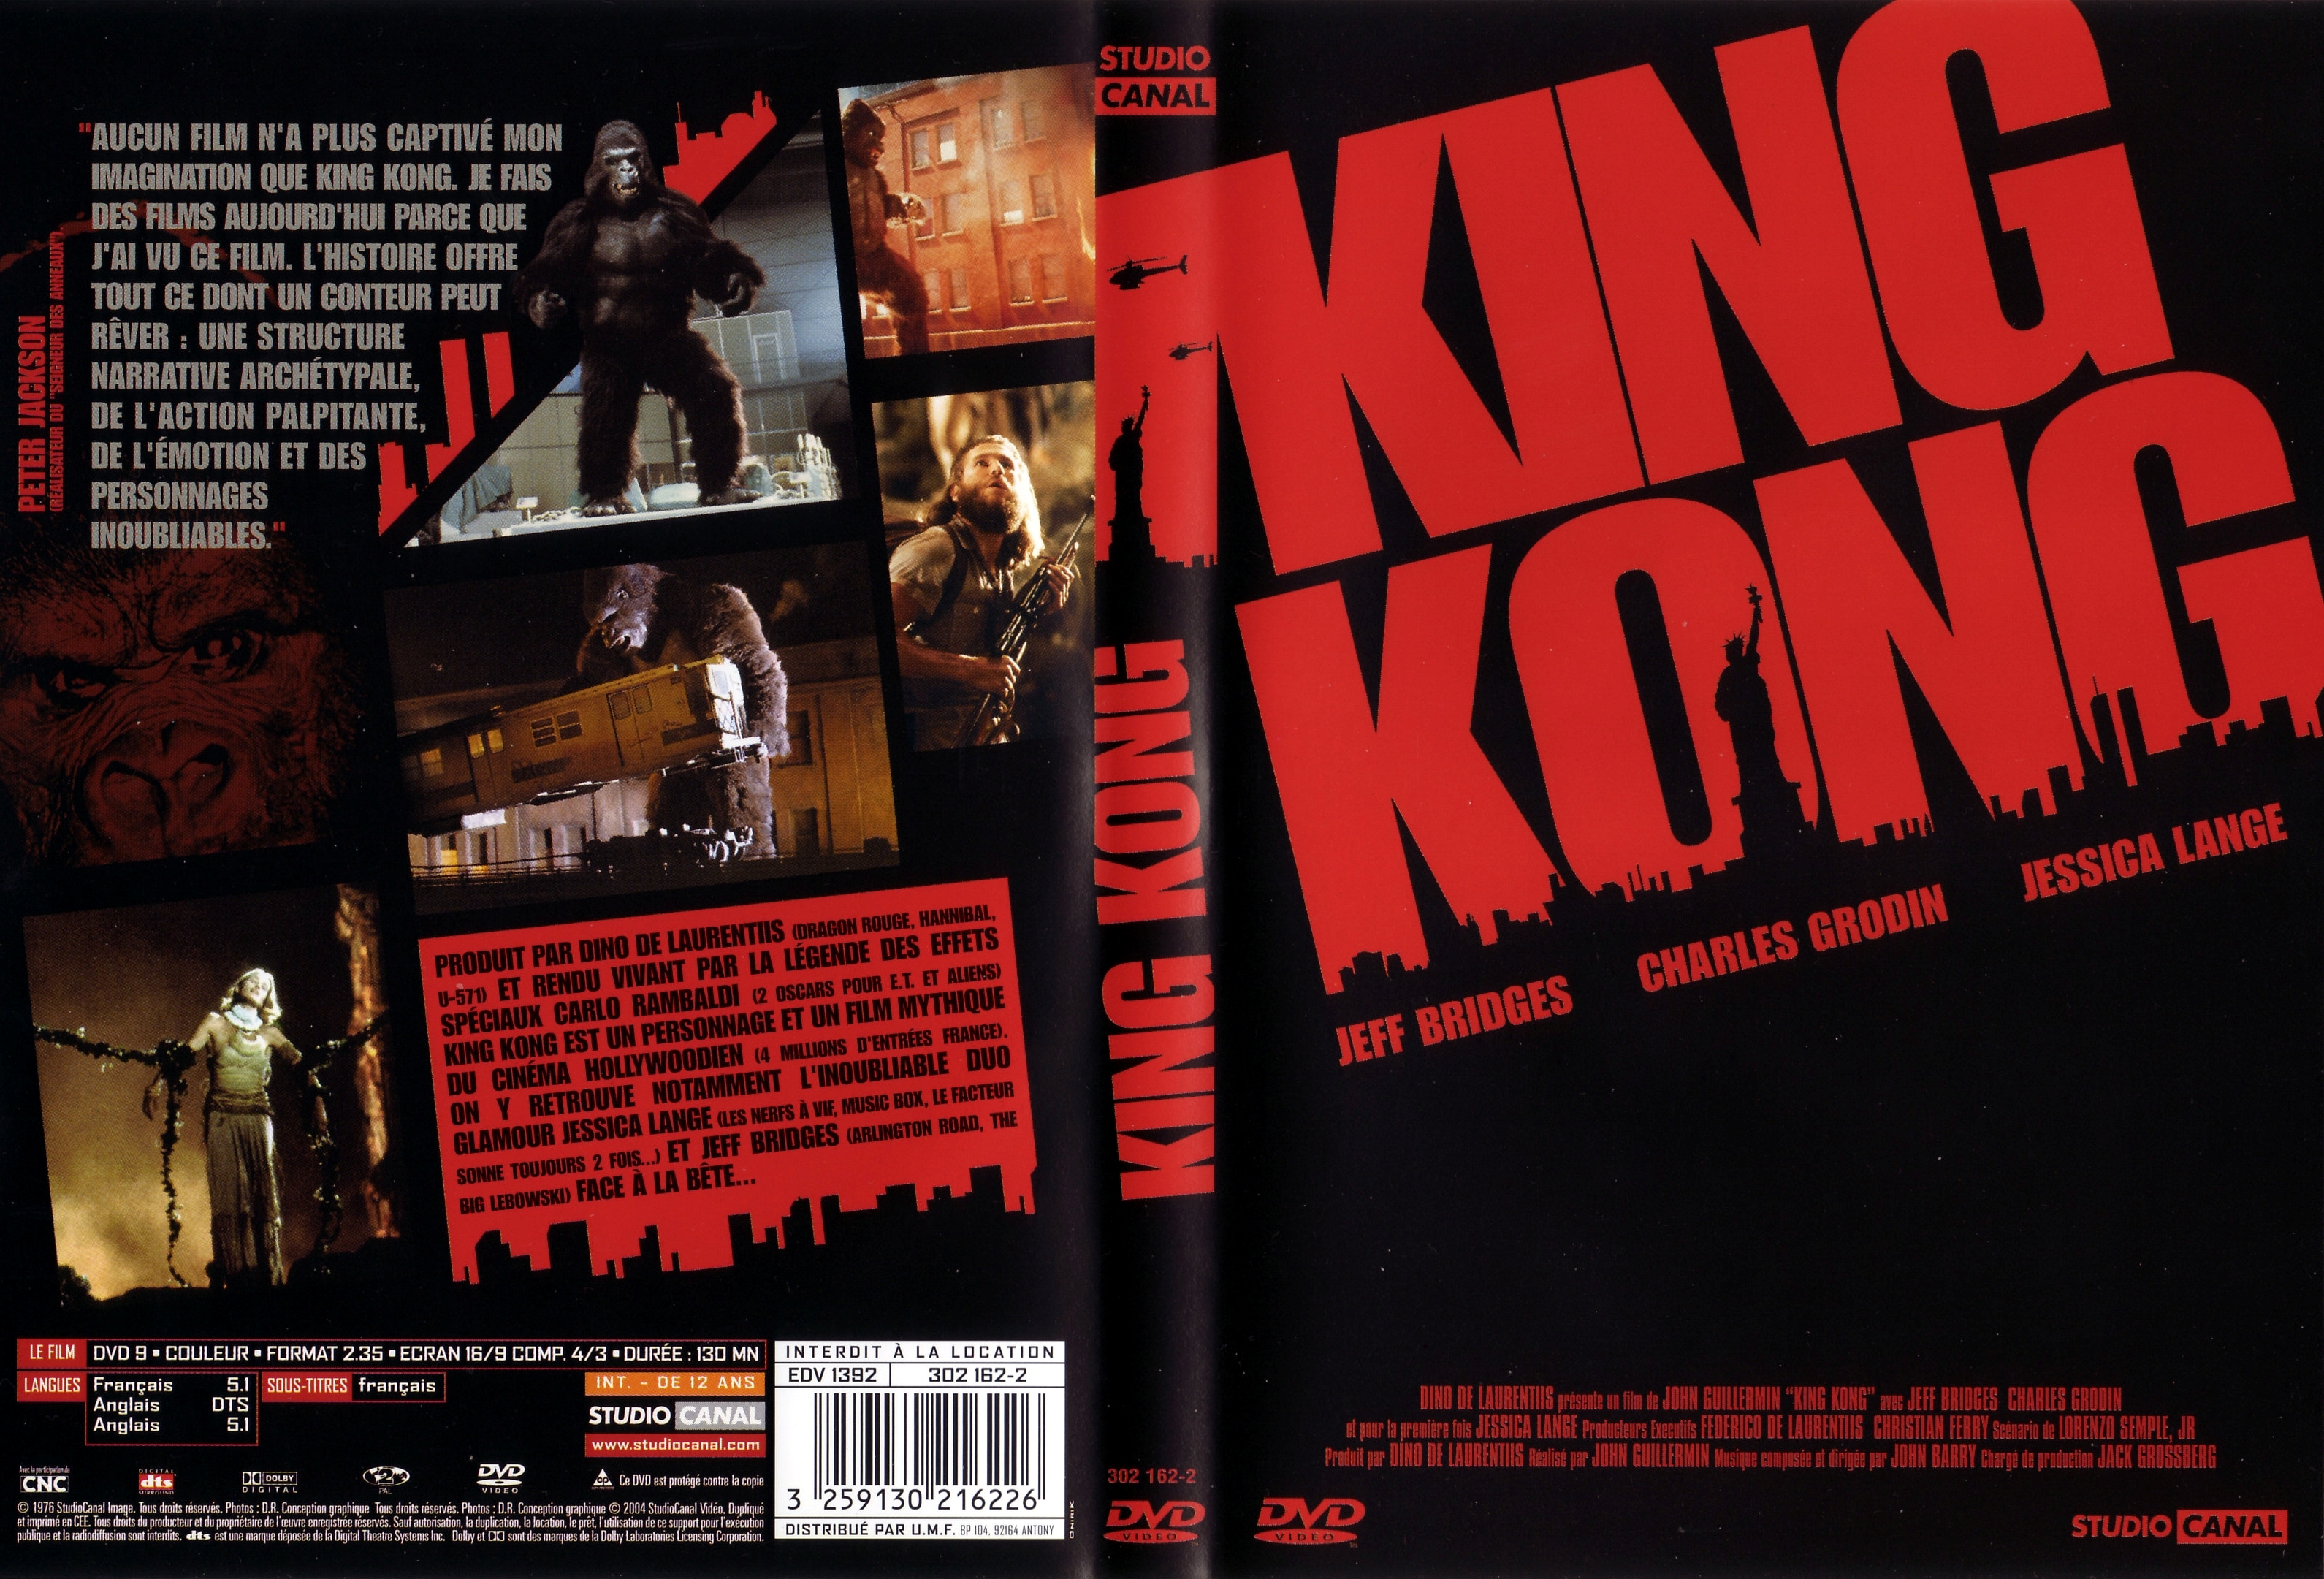 Jaquette DVD King Kong 1976 v2